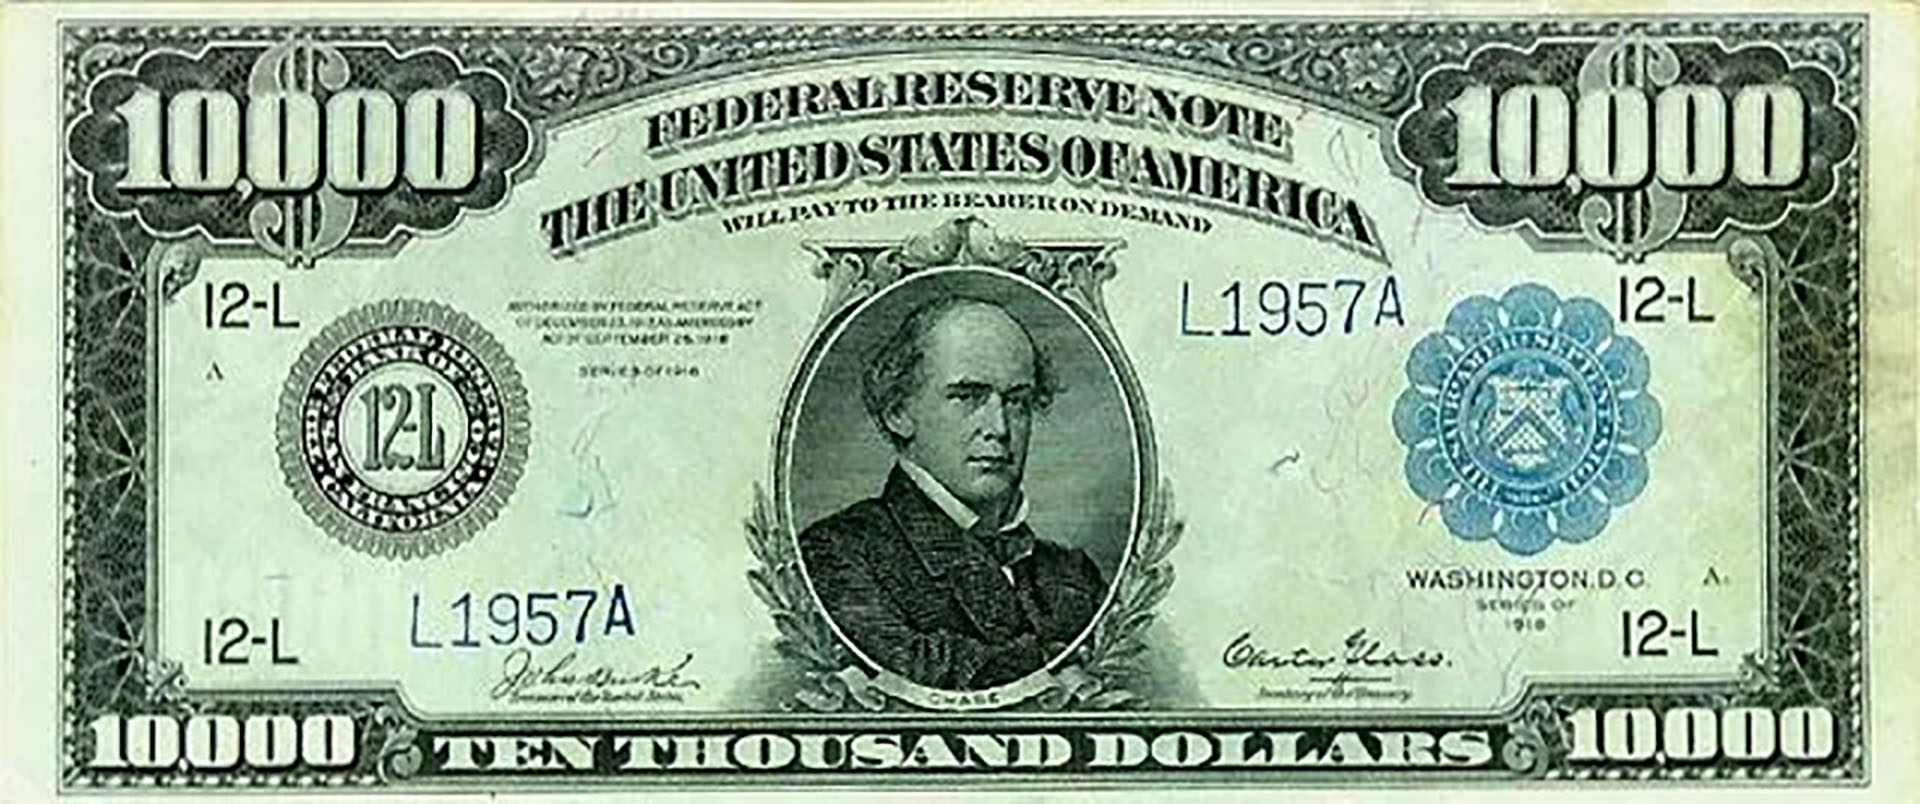 El billete de mayor denominación que alguna vez circuló en los EEUU valía USD 10.000. Sin embargo, no fue el de mayor denominación alguna vez emitido